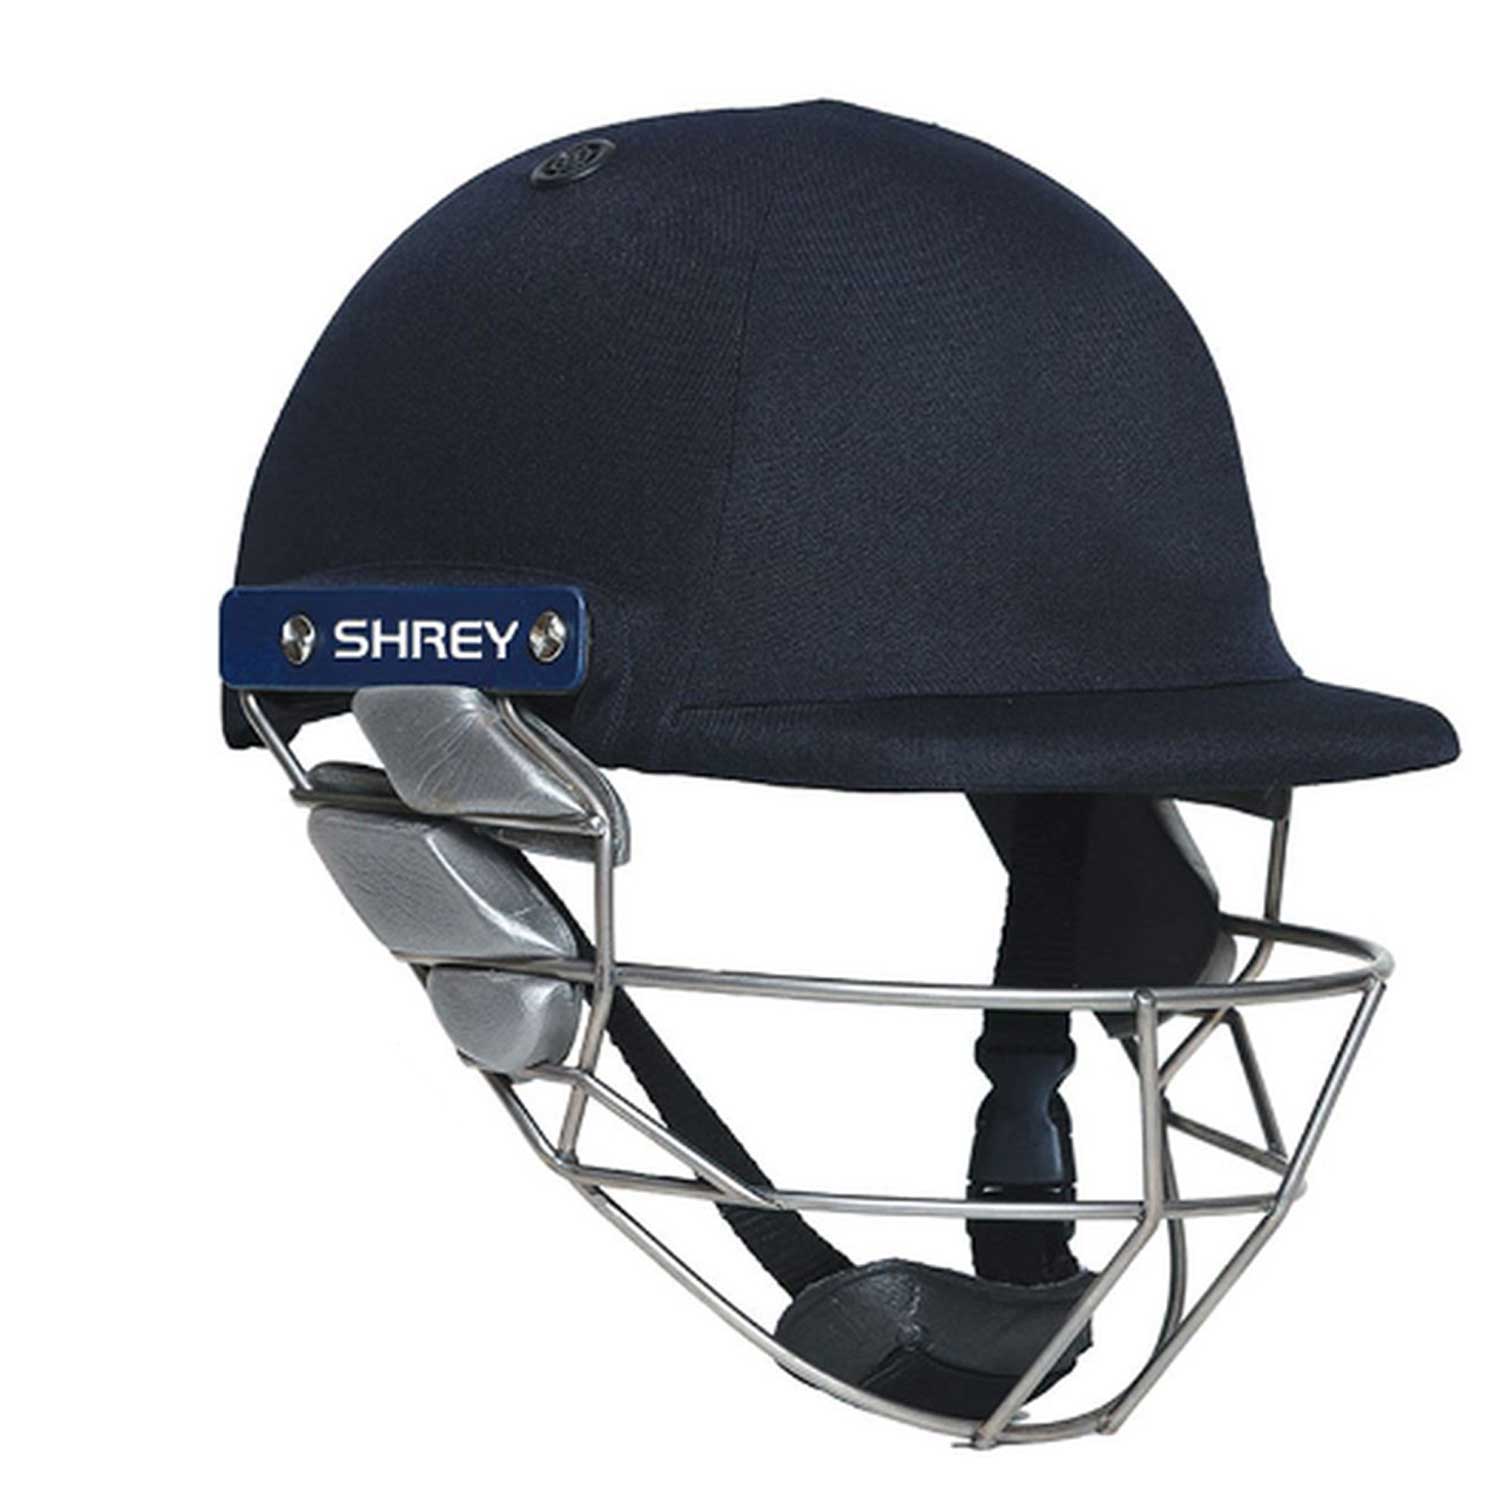 Shrey Keeping Air 2.0 Stainless Steel Grille Cricket Helmet